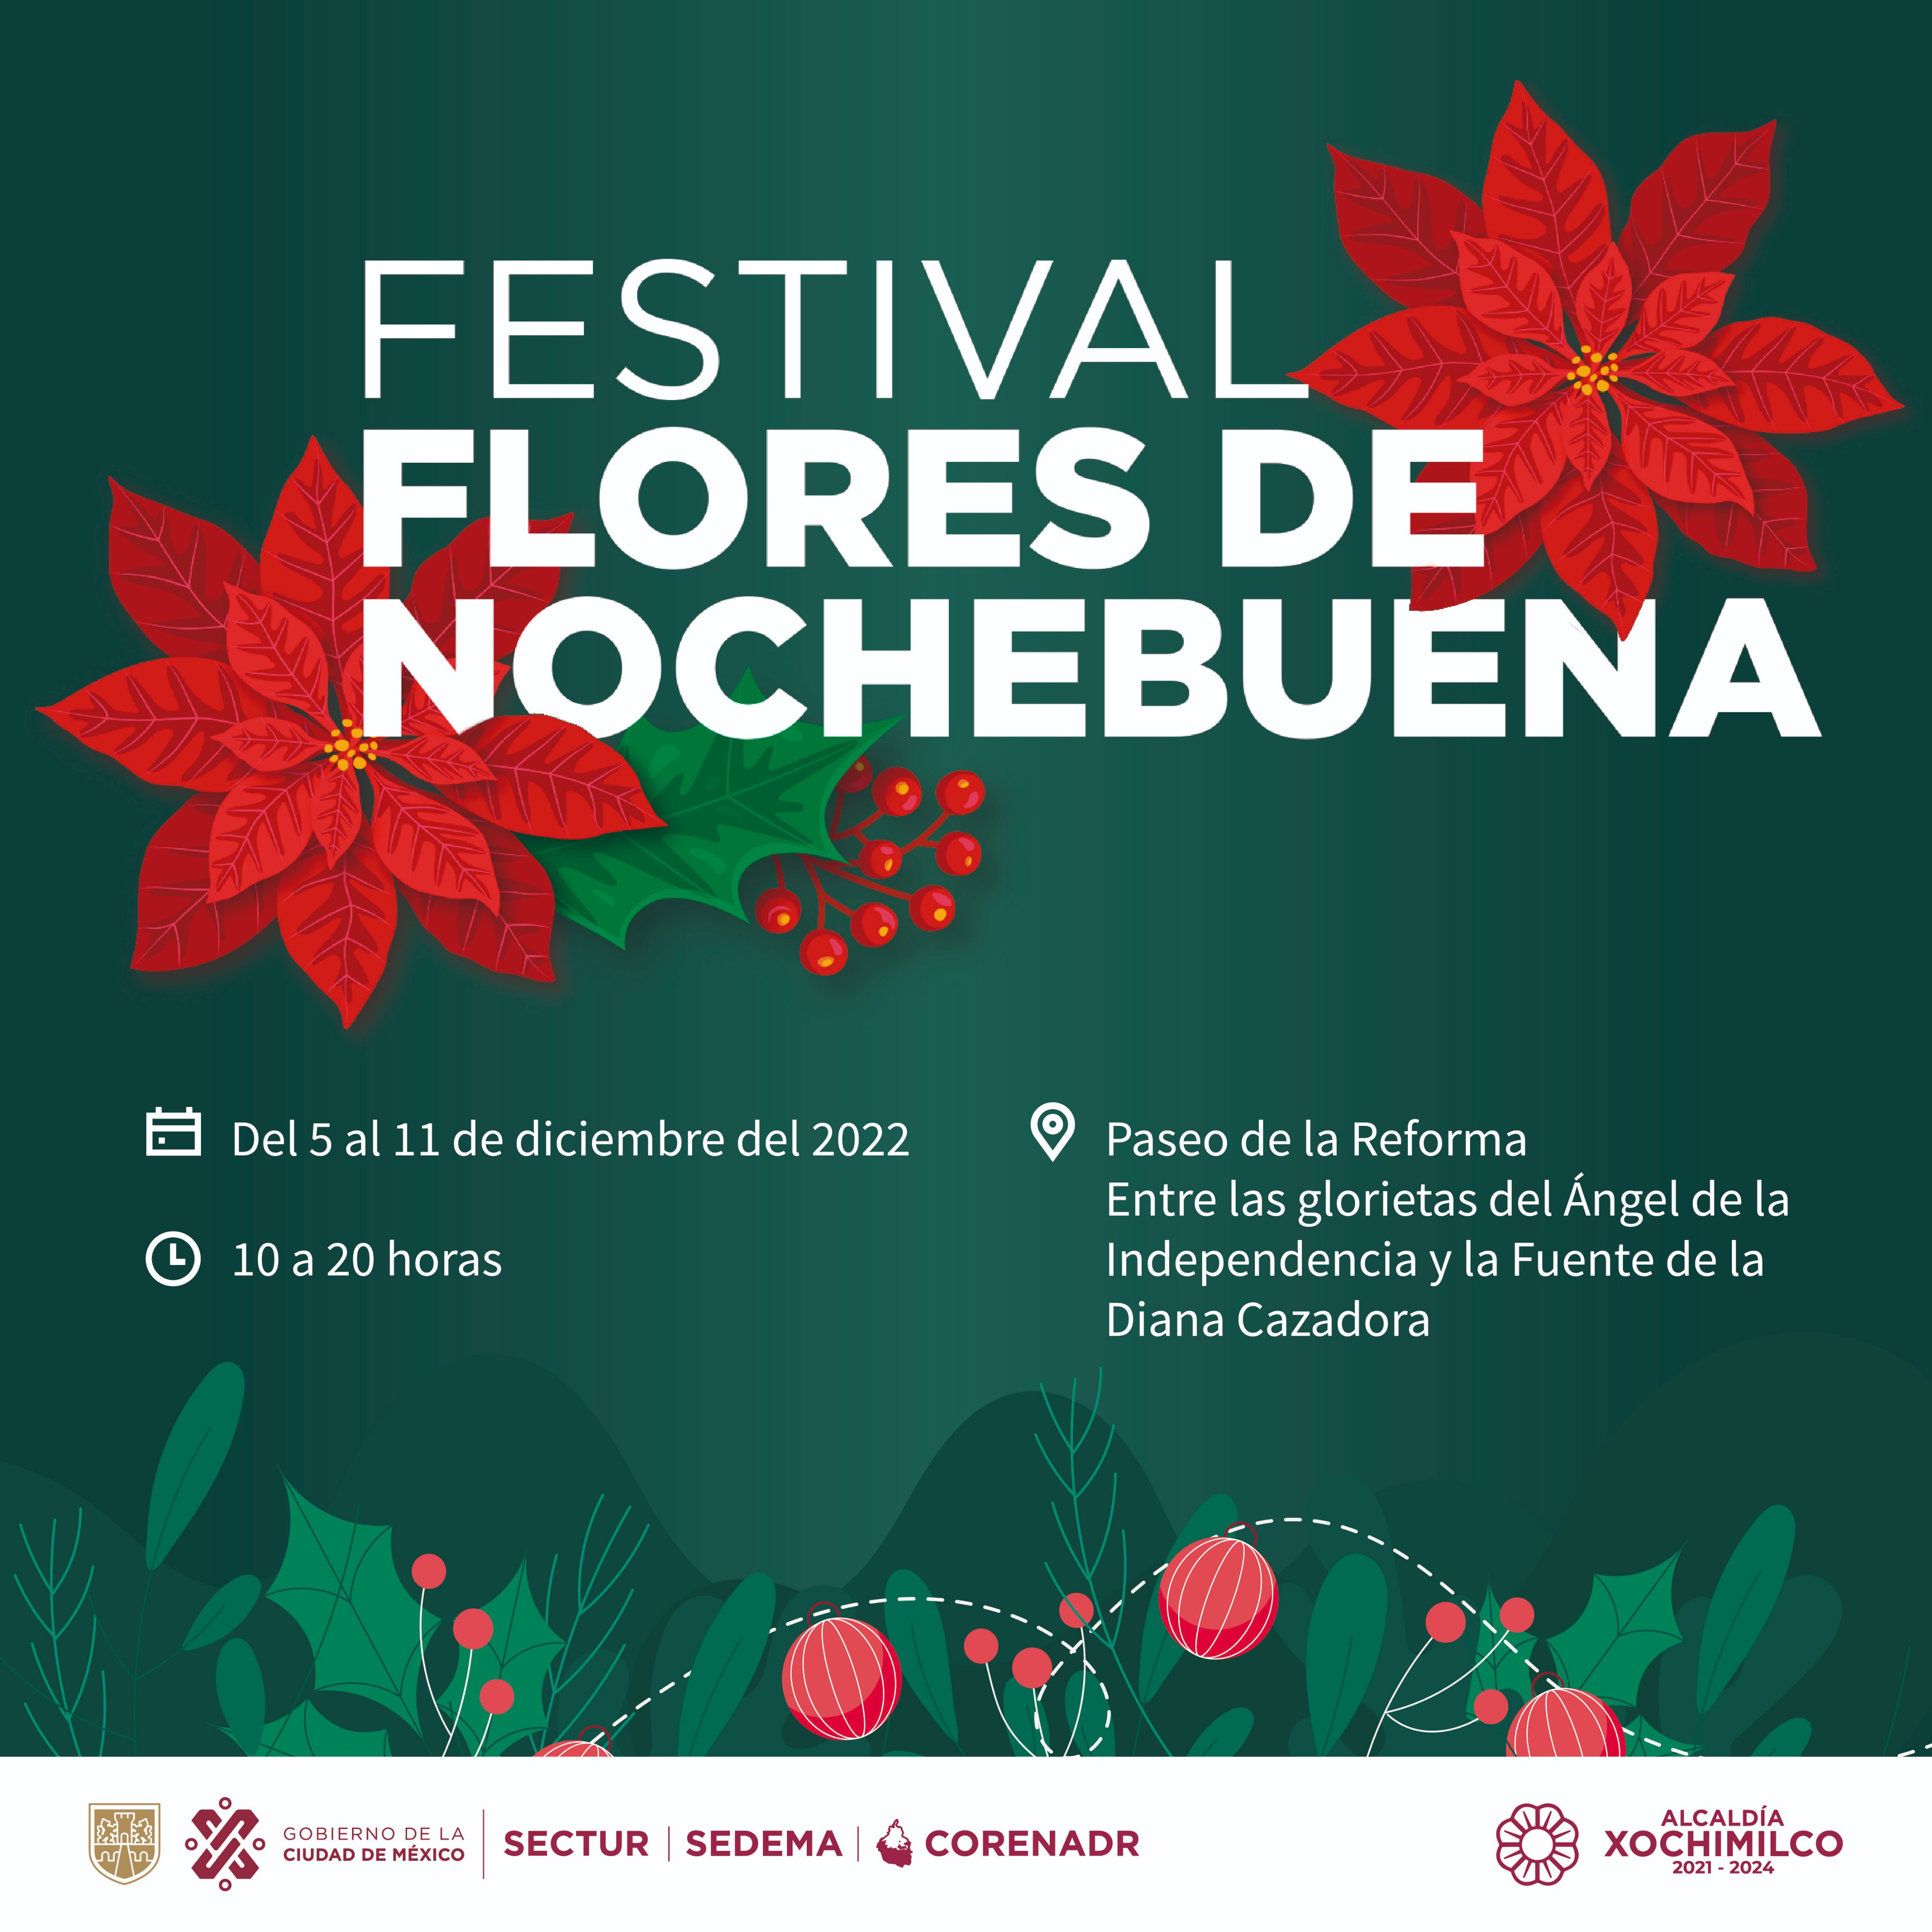 Festival Flores de Nochebuena: cuando y dónde adquirir esta planta en 2022  - Infobae